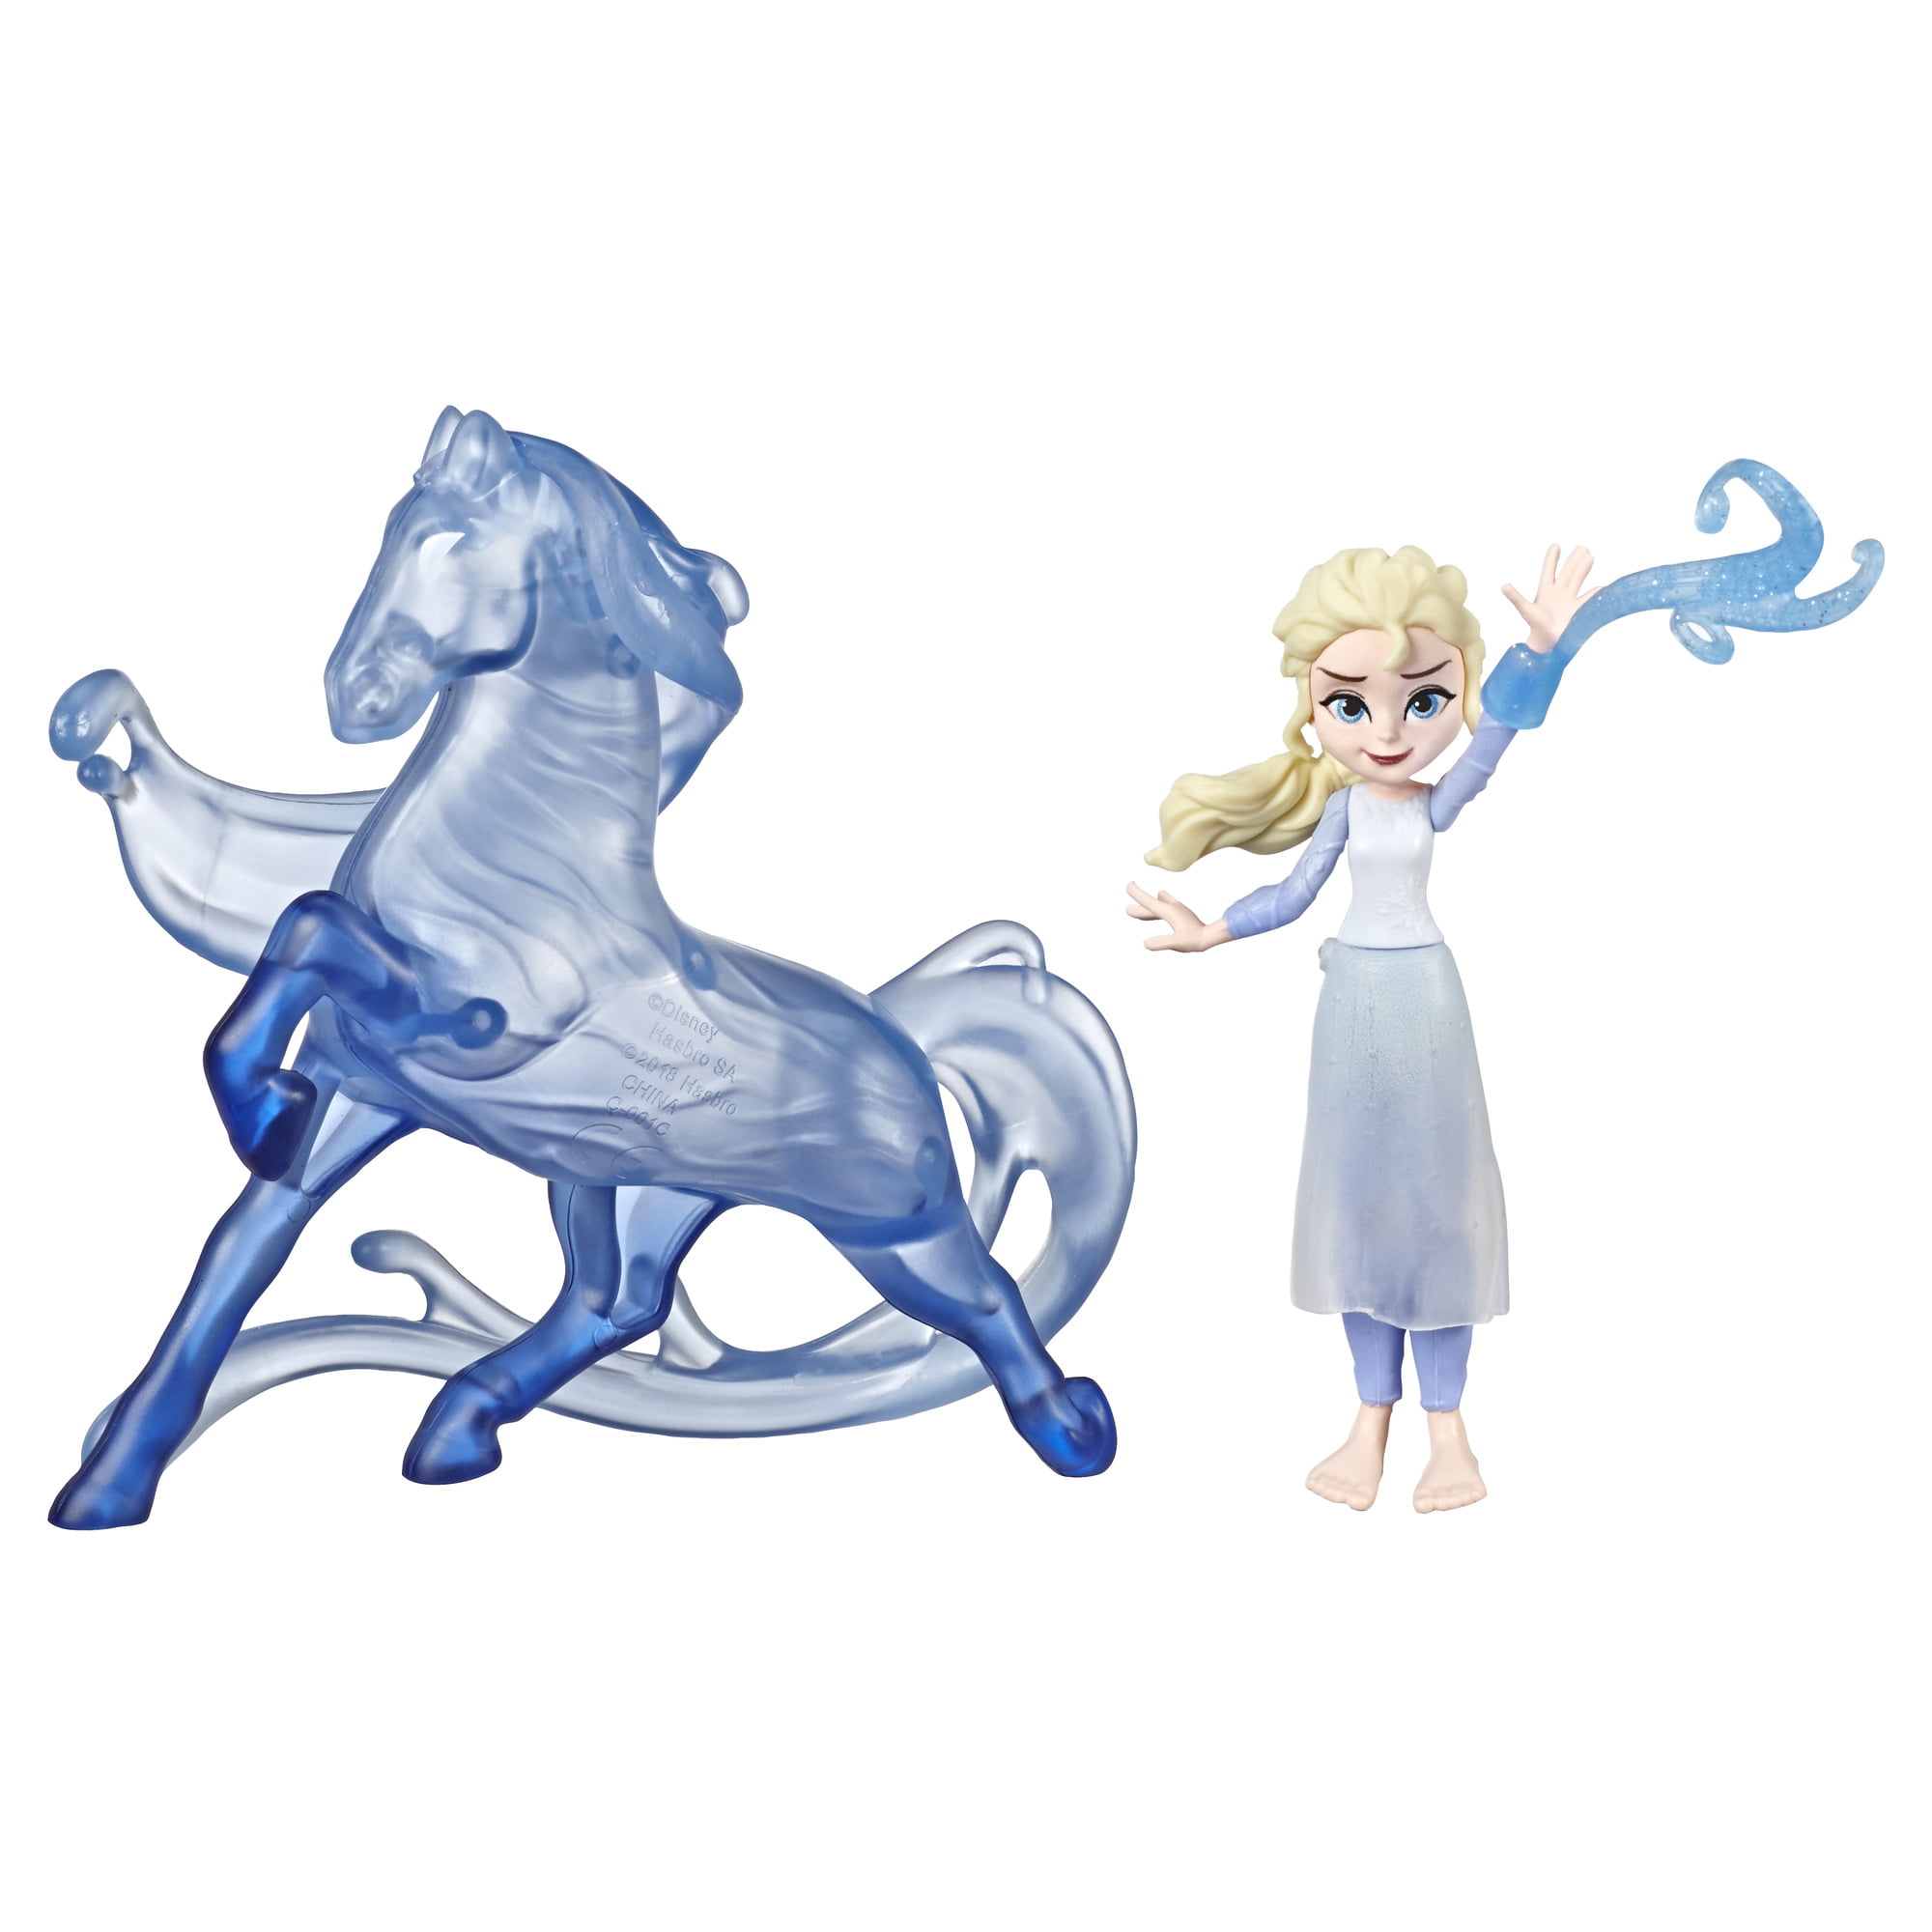 Frozen 2 II Pop Adventures Series 1 Blind Bag Figures Hasbro Disney 2019 for sale online